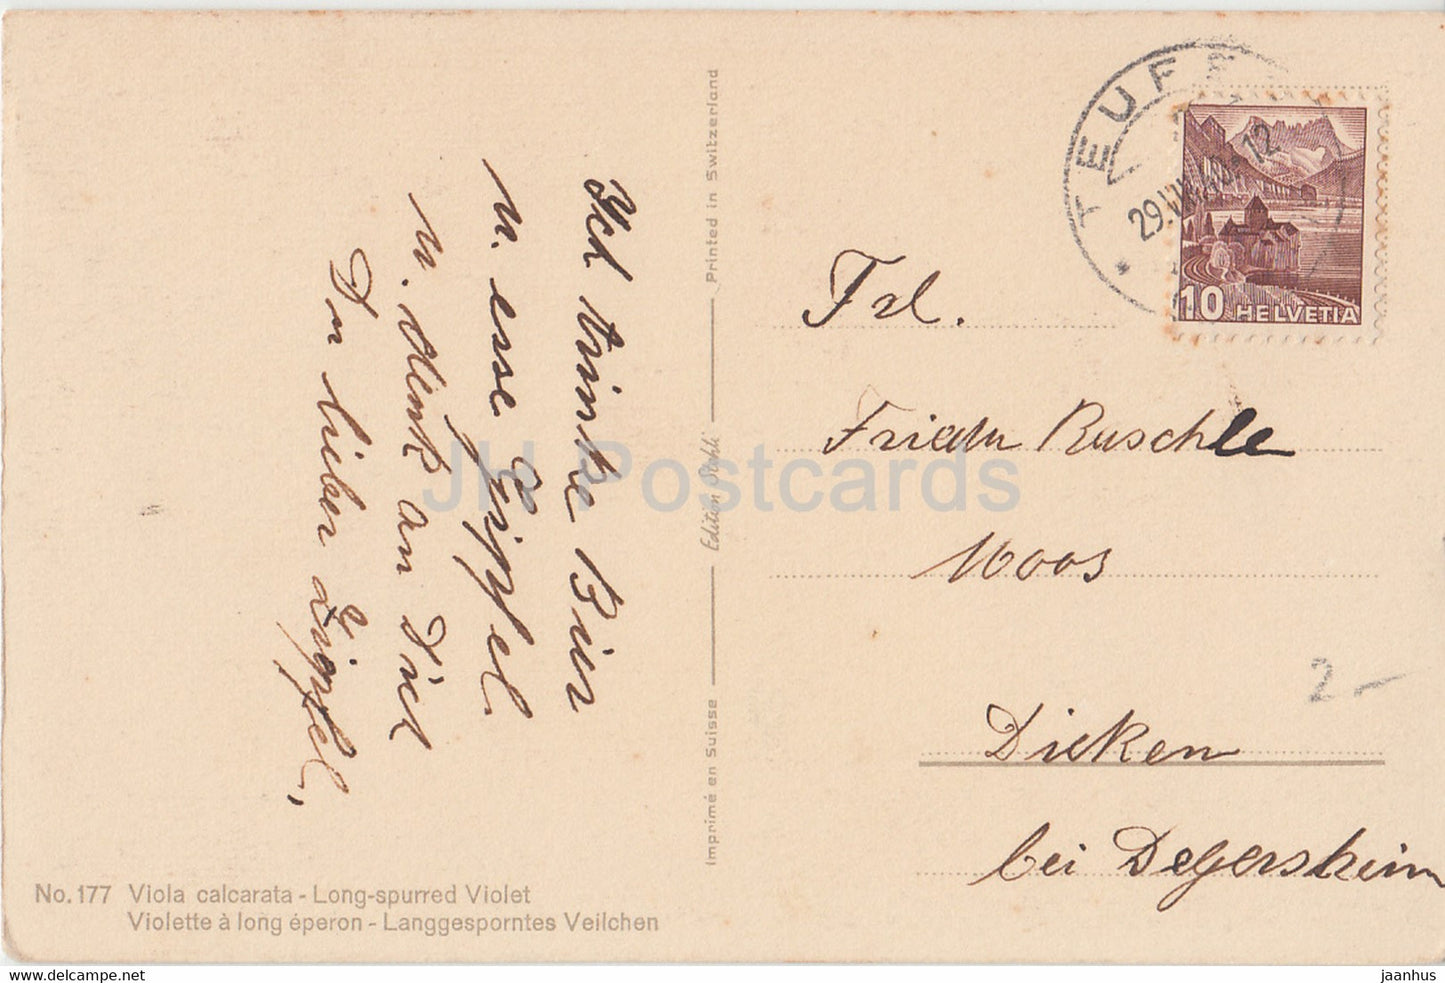 Viola Calcarata - Langes Spornveilchen - Langgesprontes Veilchen Blumen - 177 - alte Postkarte - 1940 - Schweiz - gebraucht